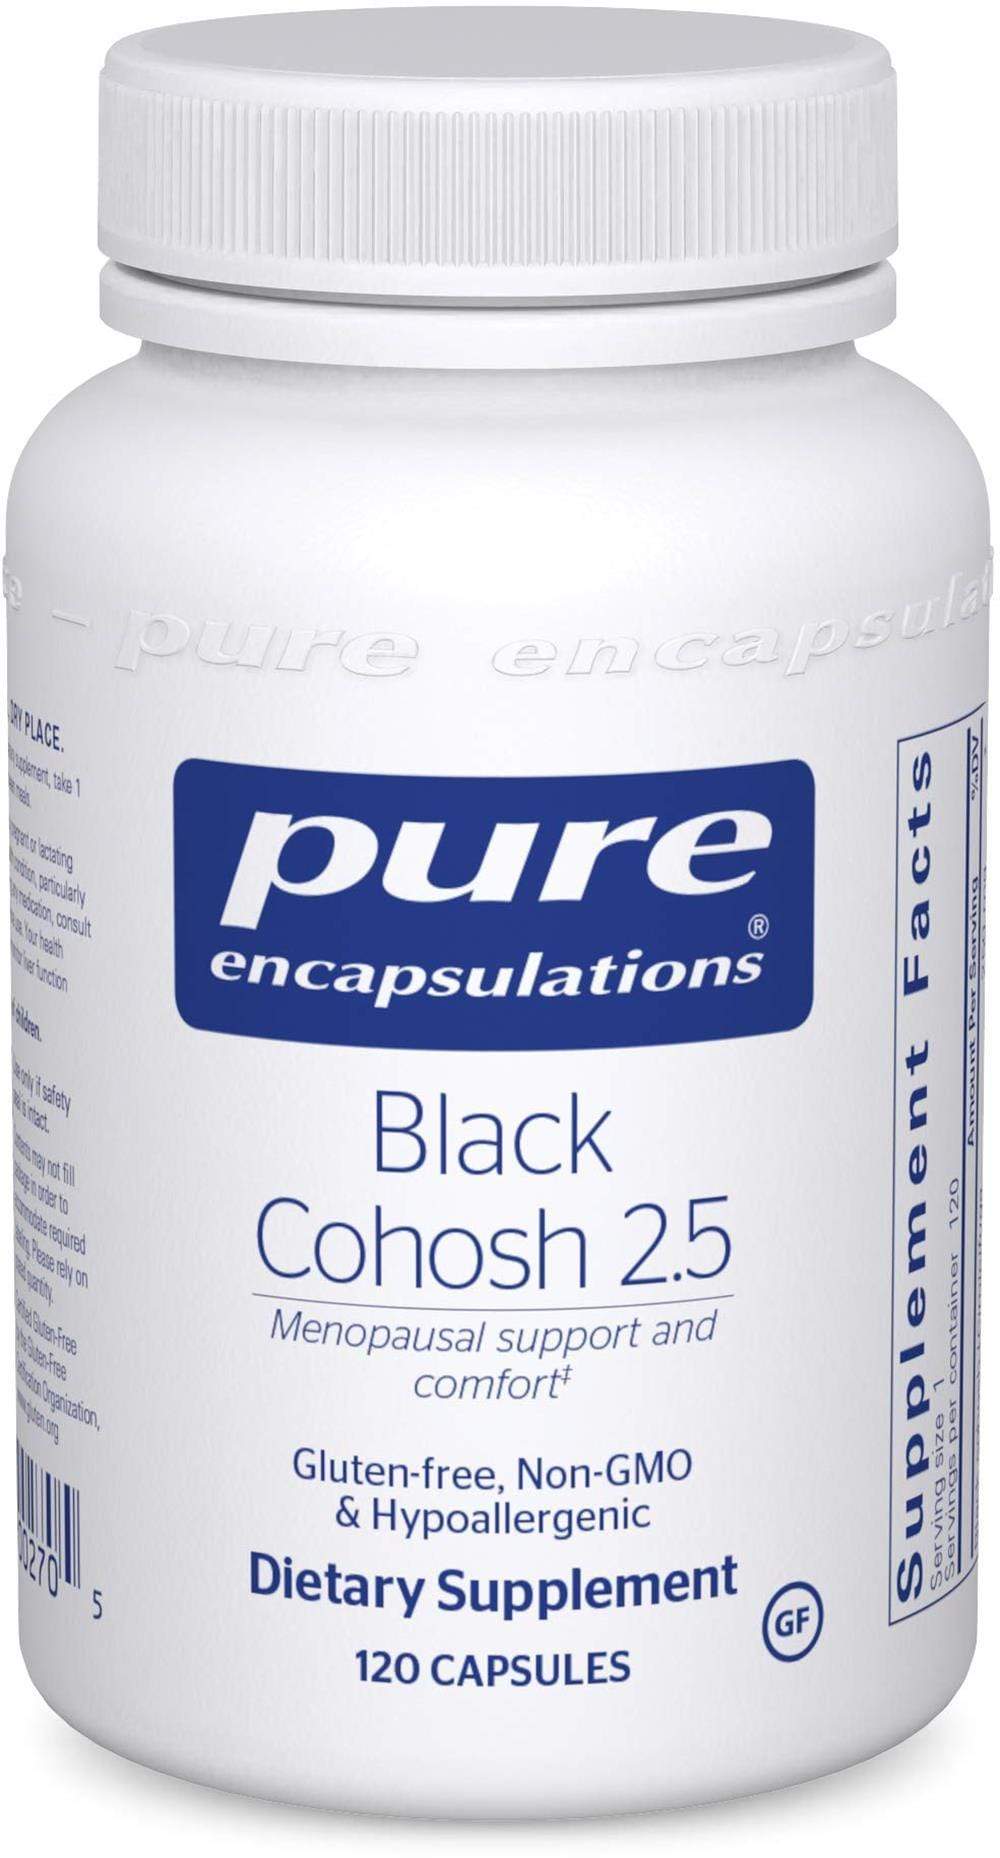 Pure Encapsulations Black Cohosh 2.5 -- 120 Capsules